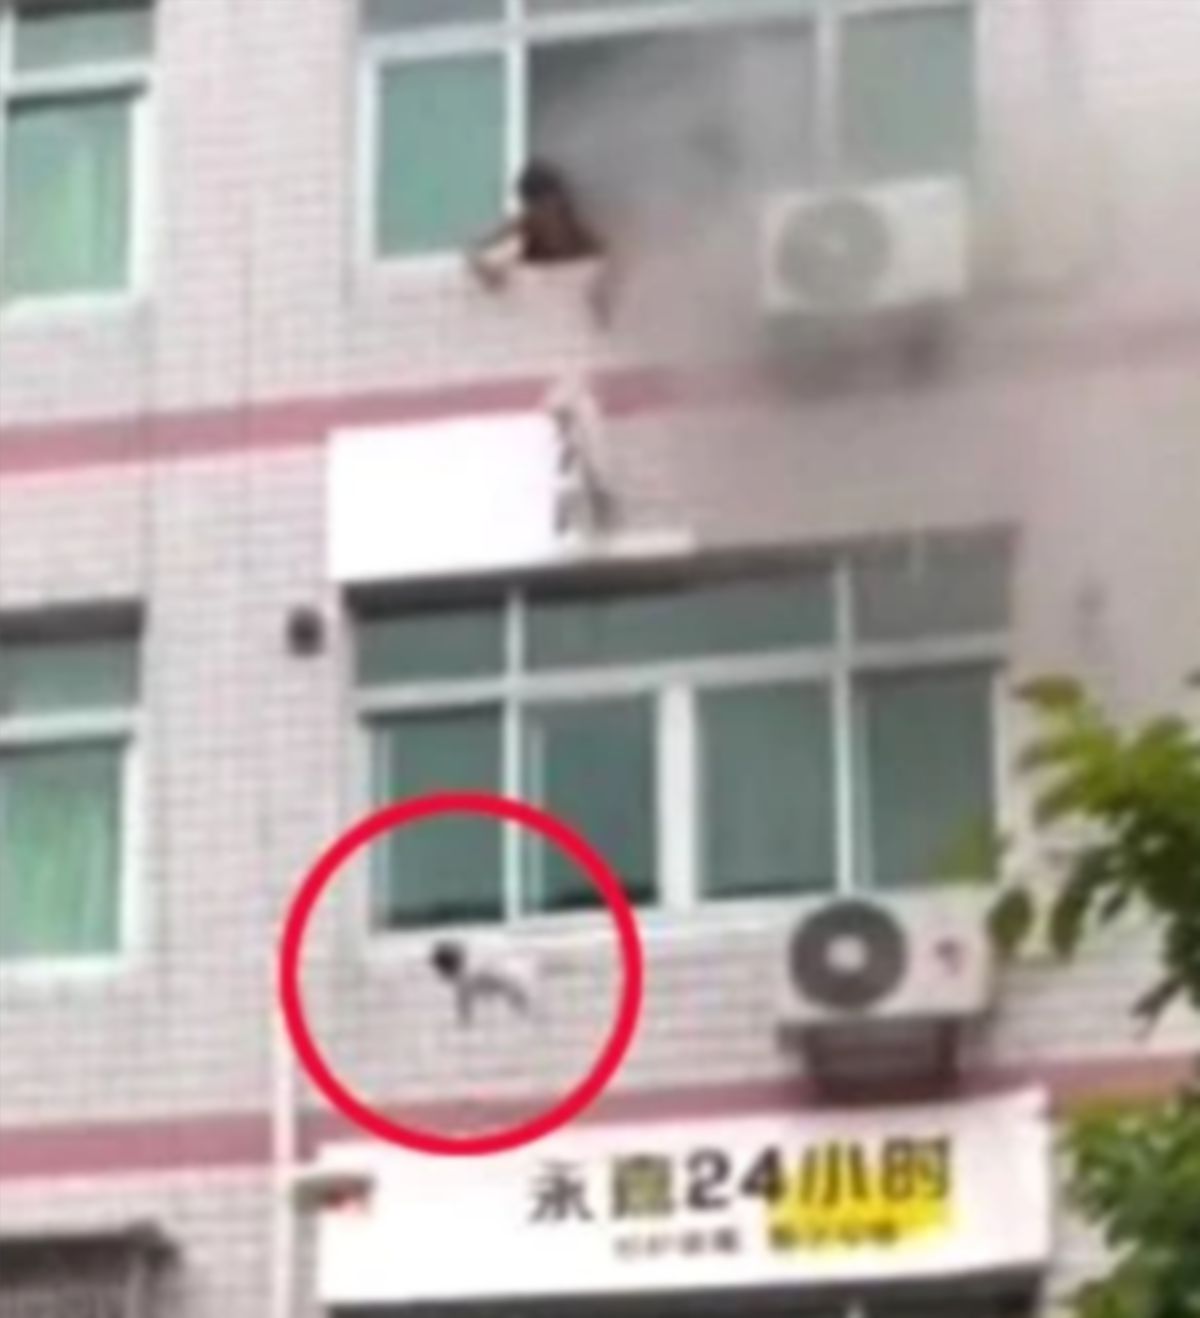 WANITA itu mencampakkan bayinya ke bawah bangunan. FOTO Weibo